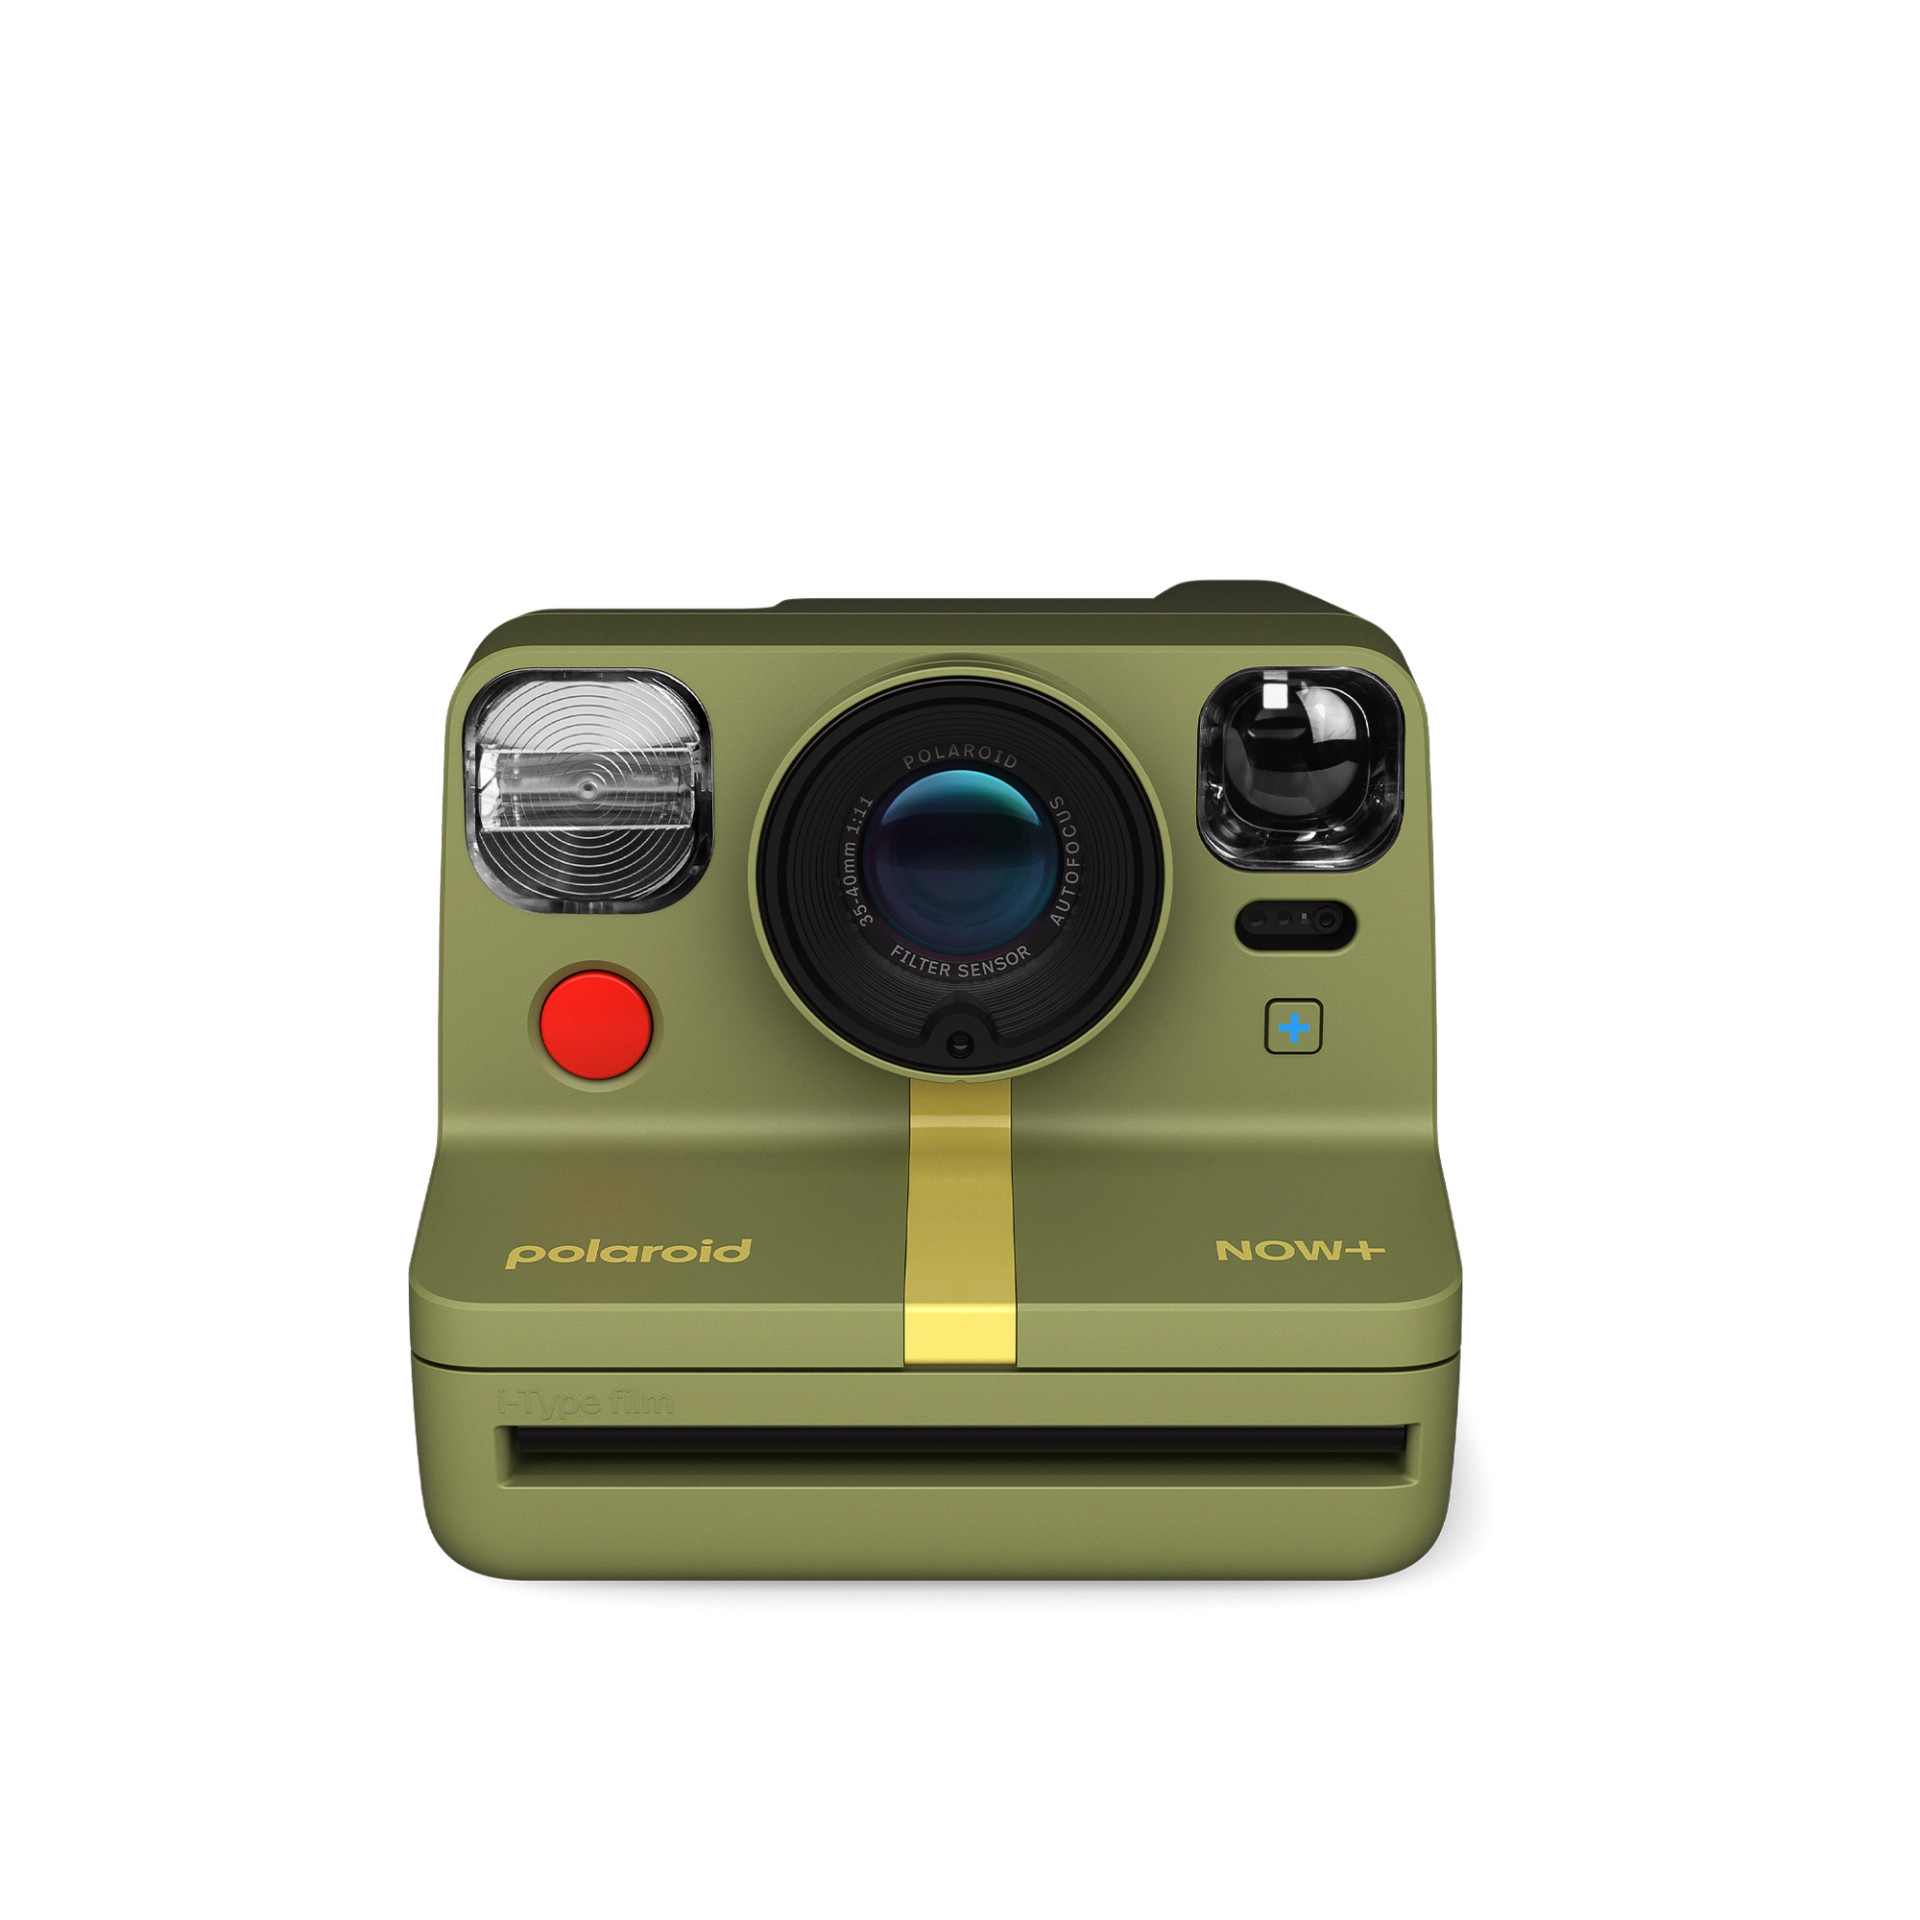 Aparat Polaroid Now + Gen 2 Forest Green - DARMOWY PACZKOMAT OD 599zł